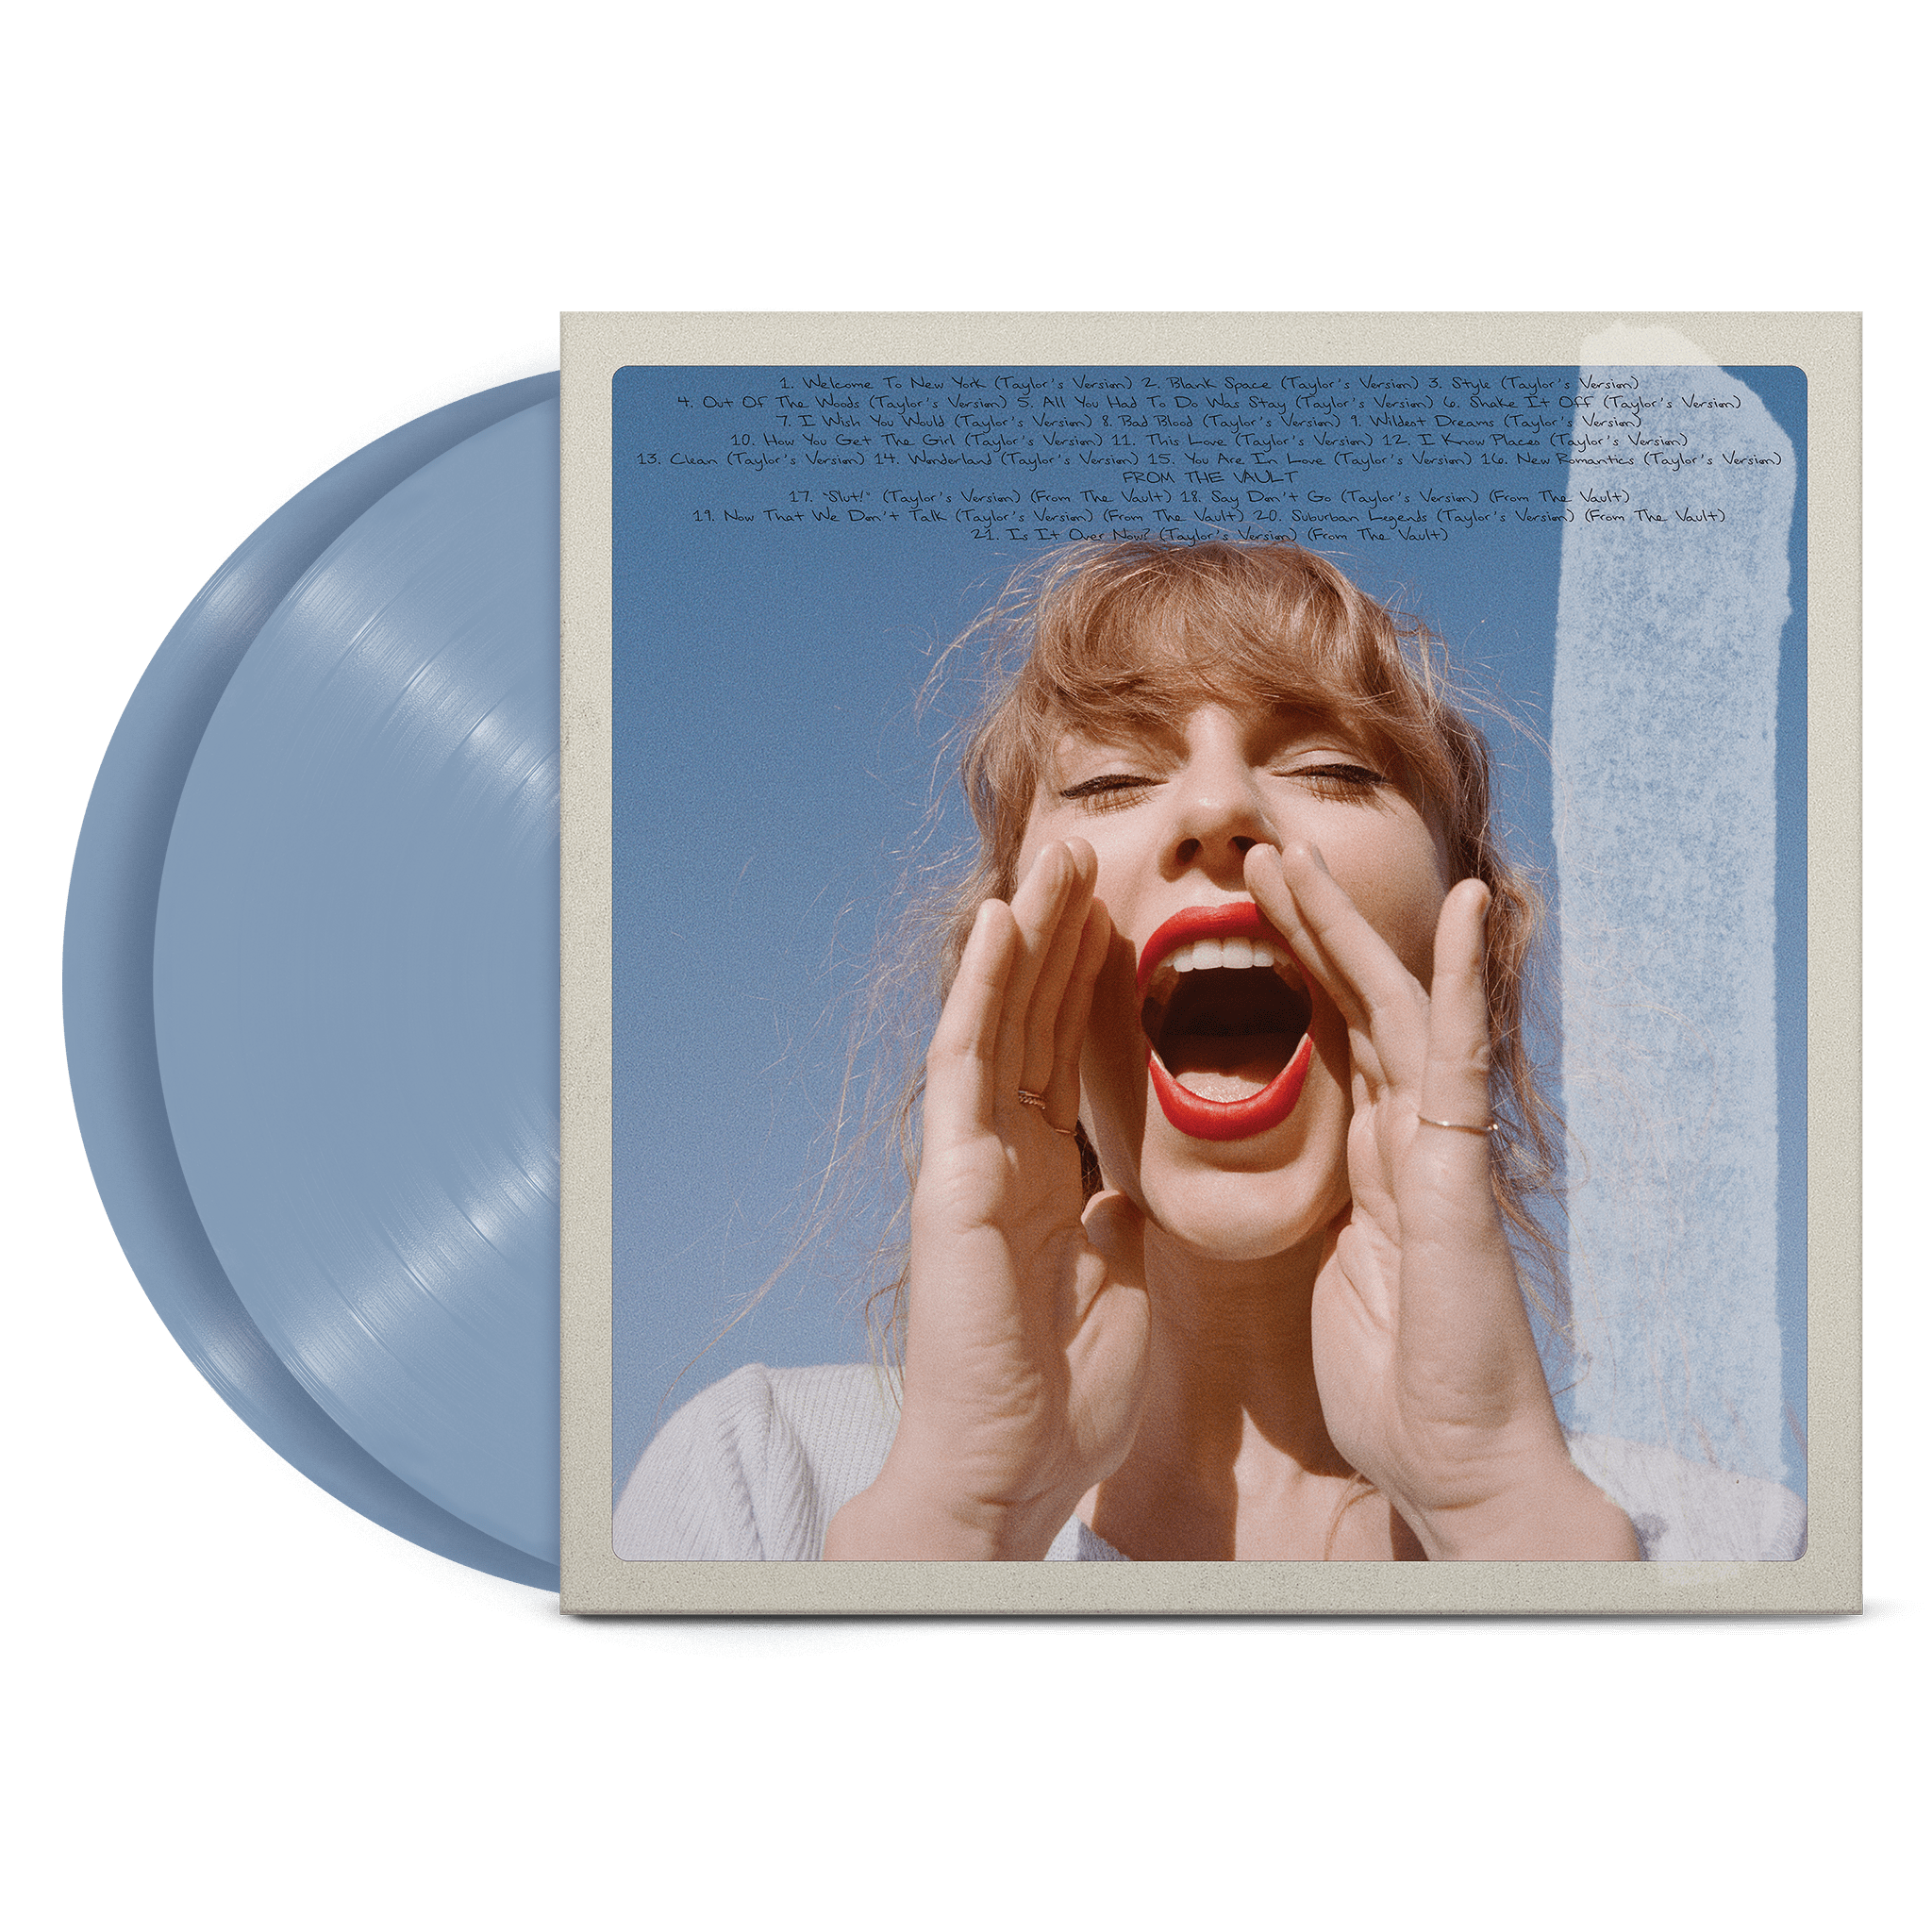 https://images.bravado.de/prod/product-assets/product-asset-data/taylor-swift/taylor-swift/products/504432/web/404180/image-thumb__404180__3000x3000_original/Taylor-Swift-1989-Taylor-s-Version-Vinyl-Album-Crystal-Skies-Blue-504432-404180.png